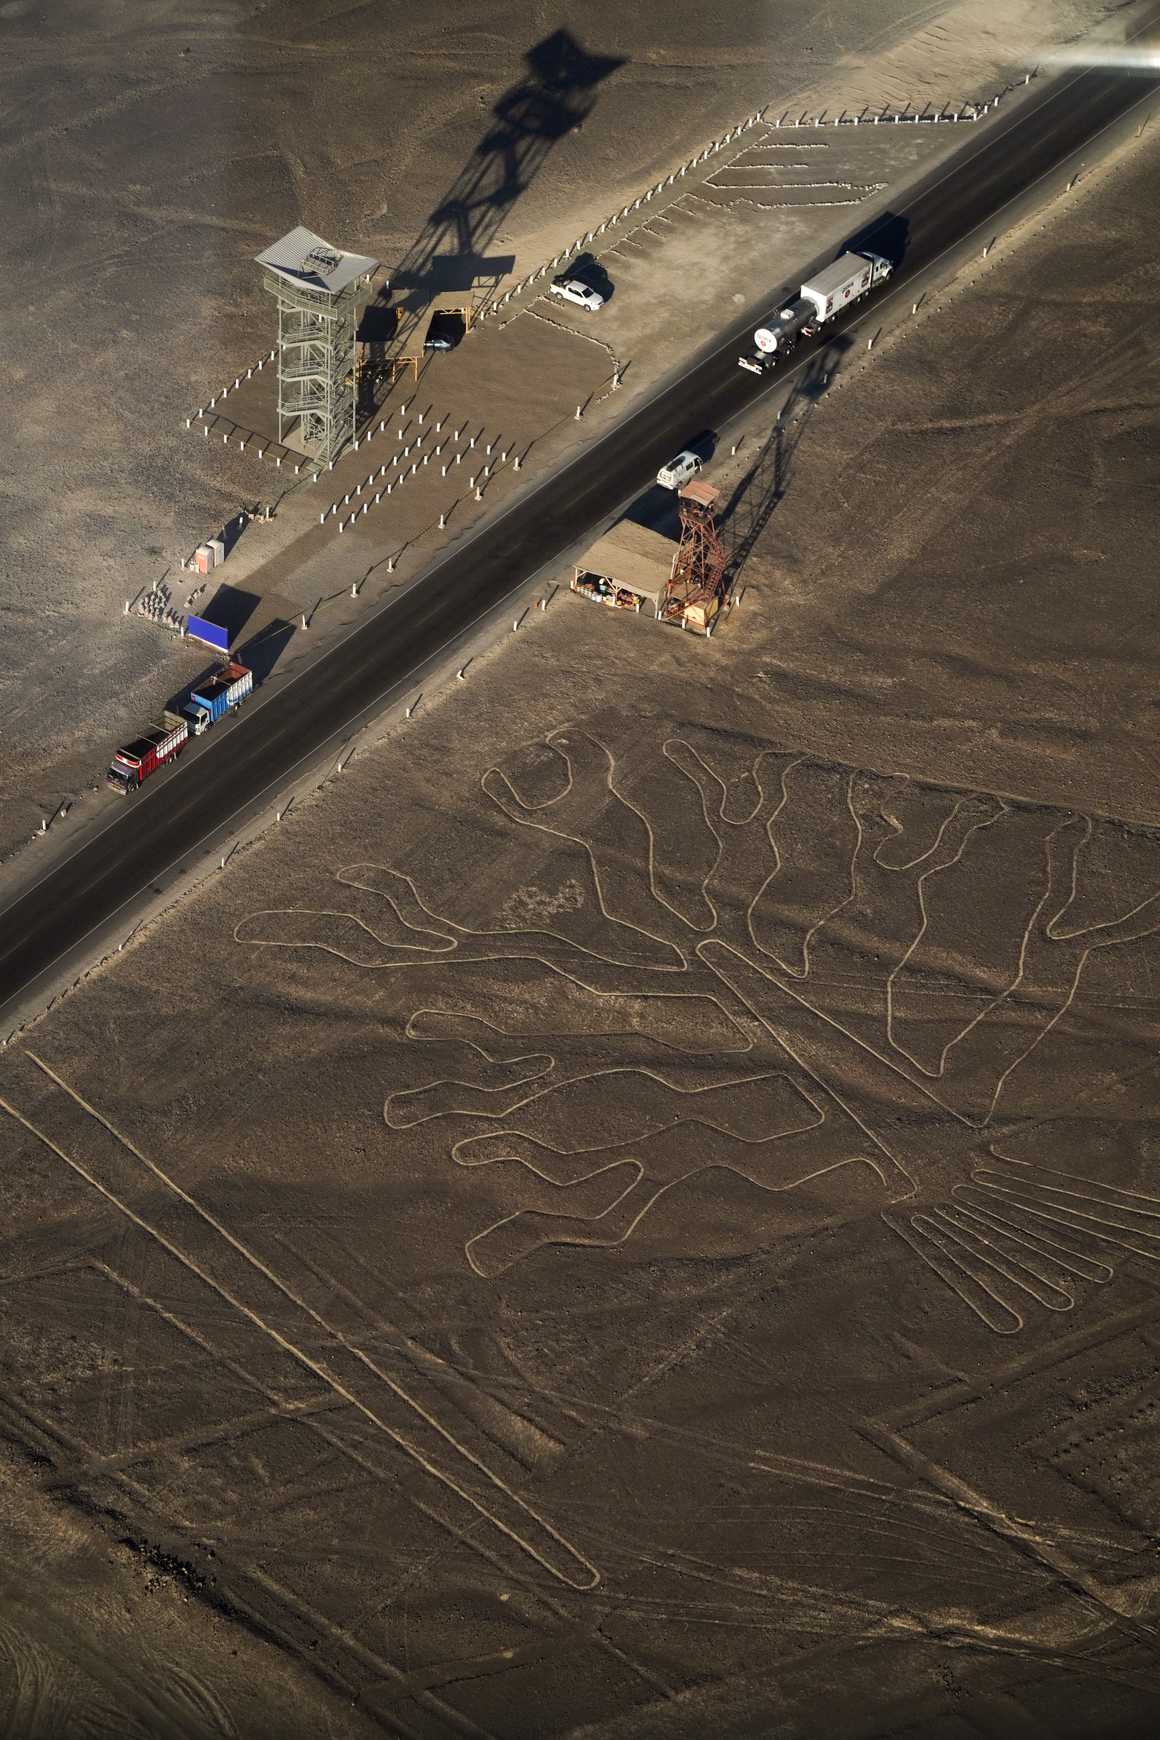 Nasca lines in Peru